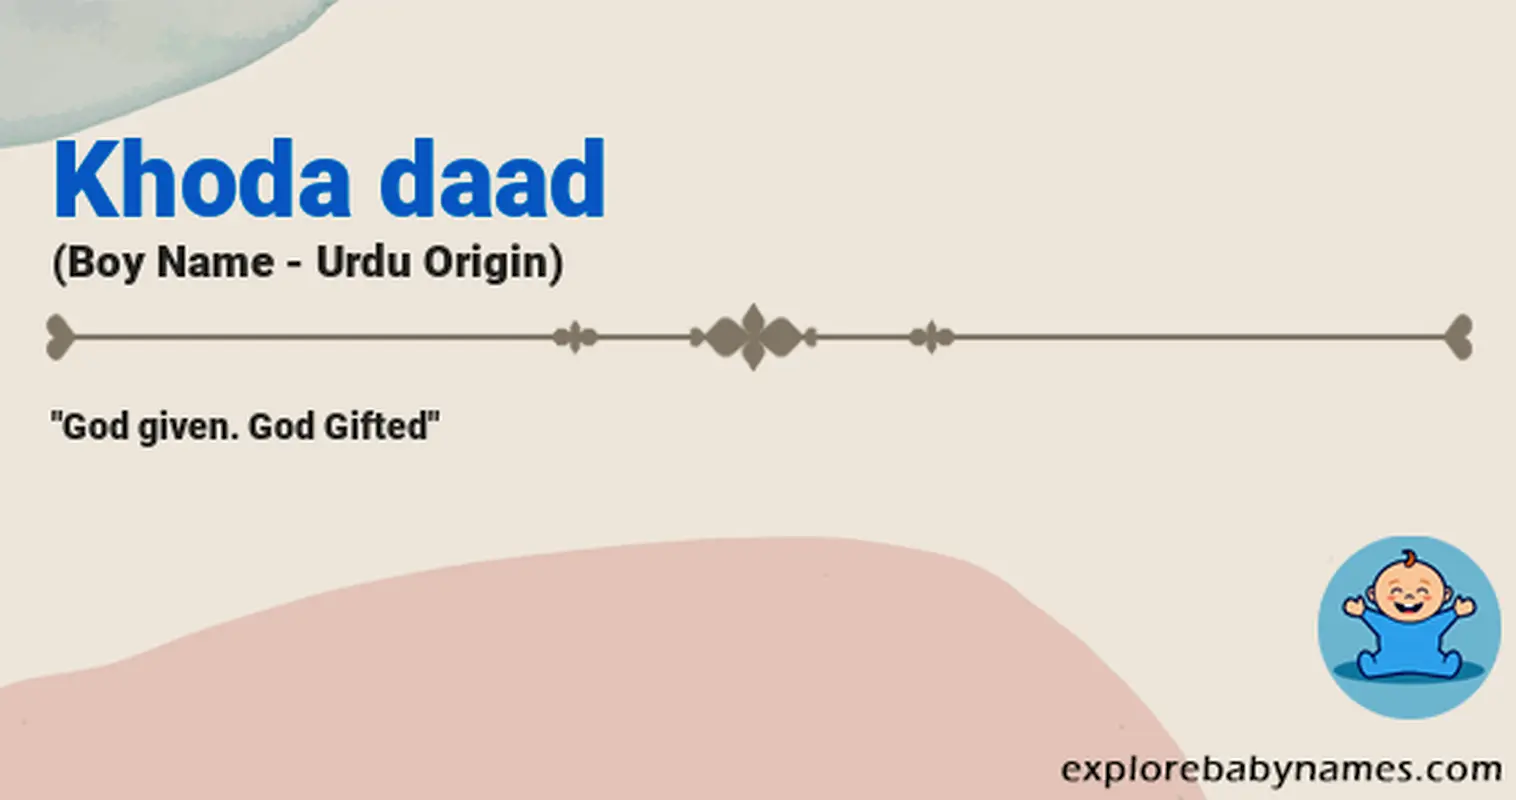 Meaning of Khoda daad